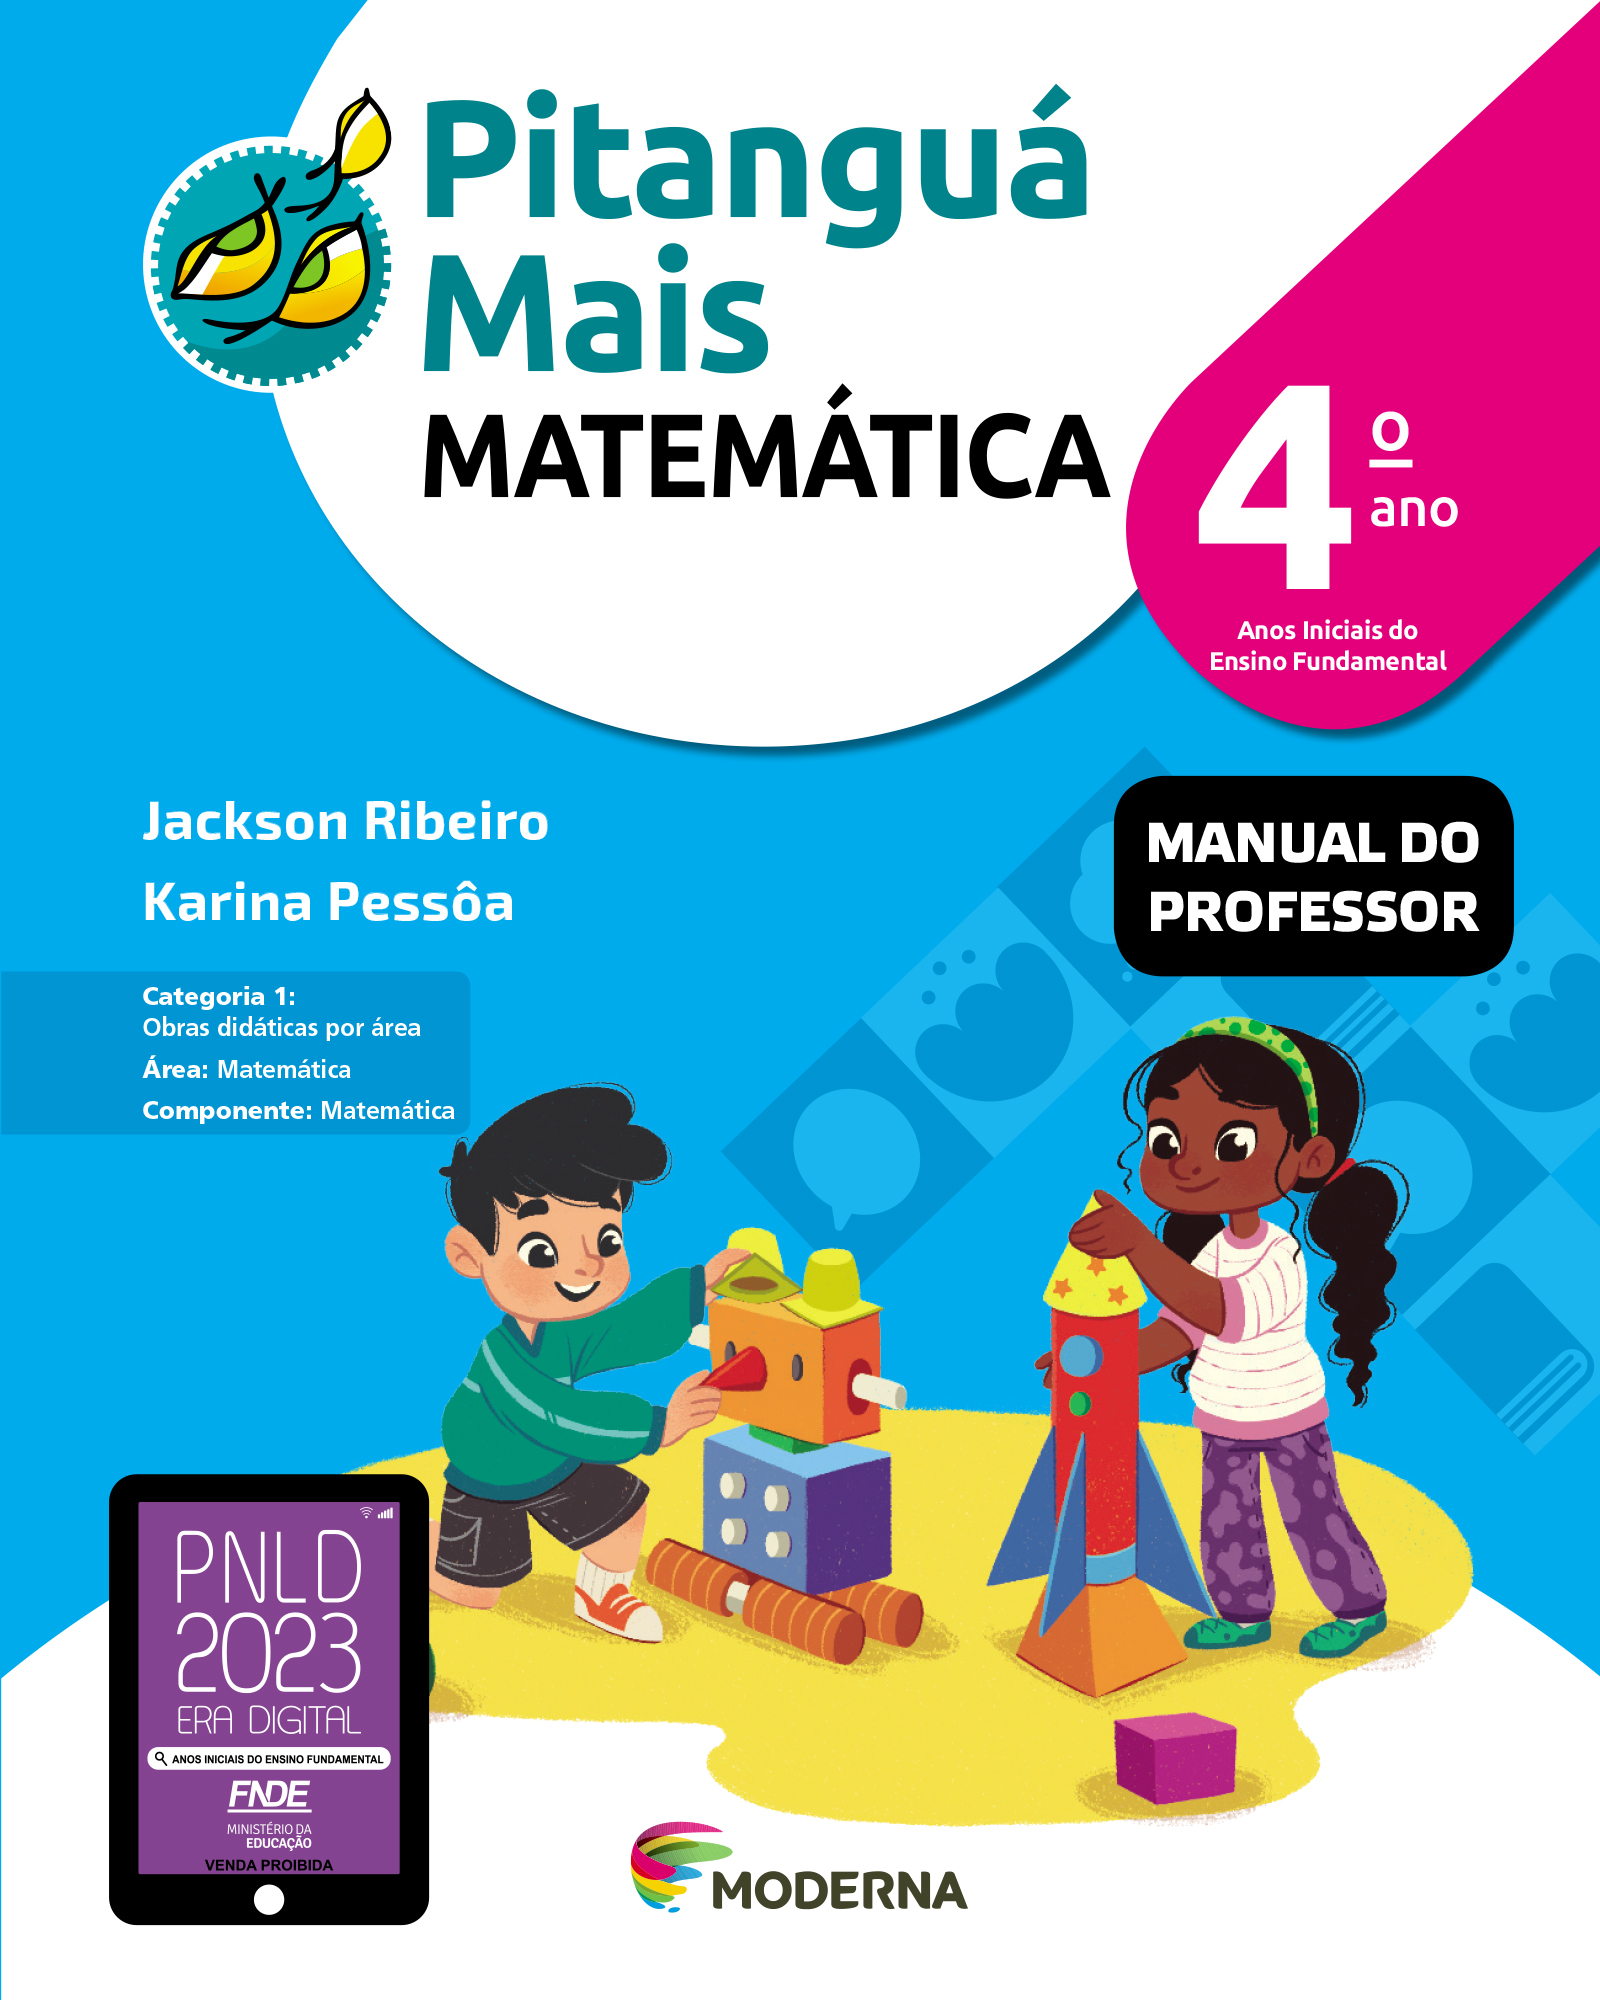 IMAGEM: capa do livro Pitanguá Mais MATEMÁTICA 4, Manual do Professor. duas crianças montam brinquedos com embalagens semelhantes a formas geométricas, como triângulo, retângulo e cilindro. FIM DA IMAGEM.